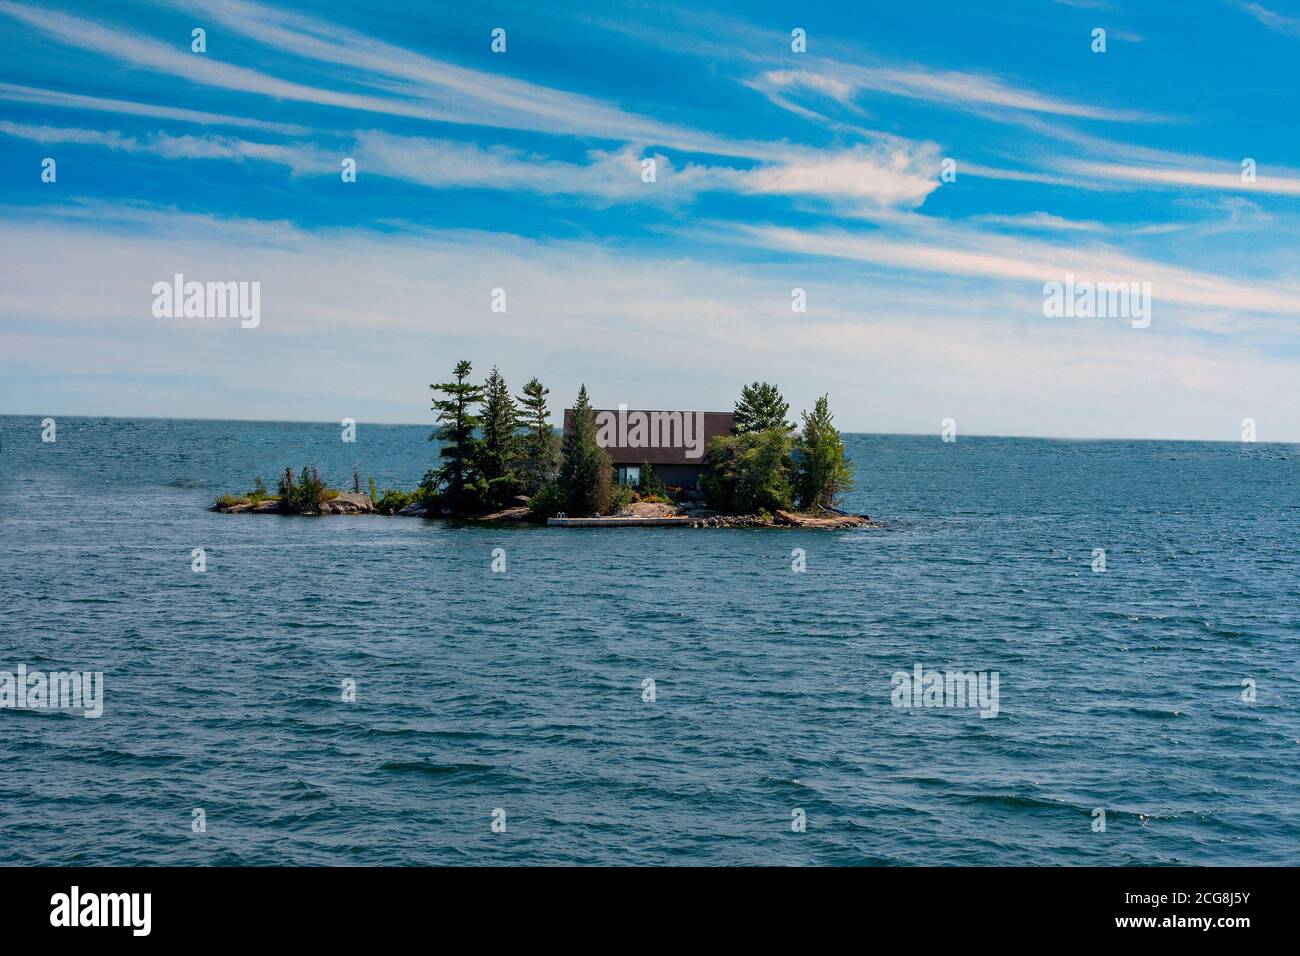 Gebäude auf einer kleinen Insel in einem großen See versteckt Große Bäume und Sträucher Stockfoto